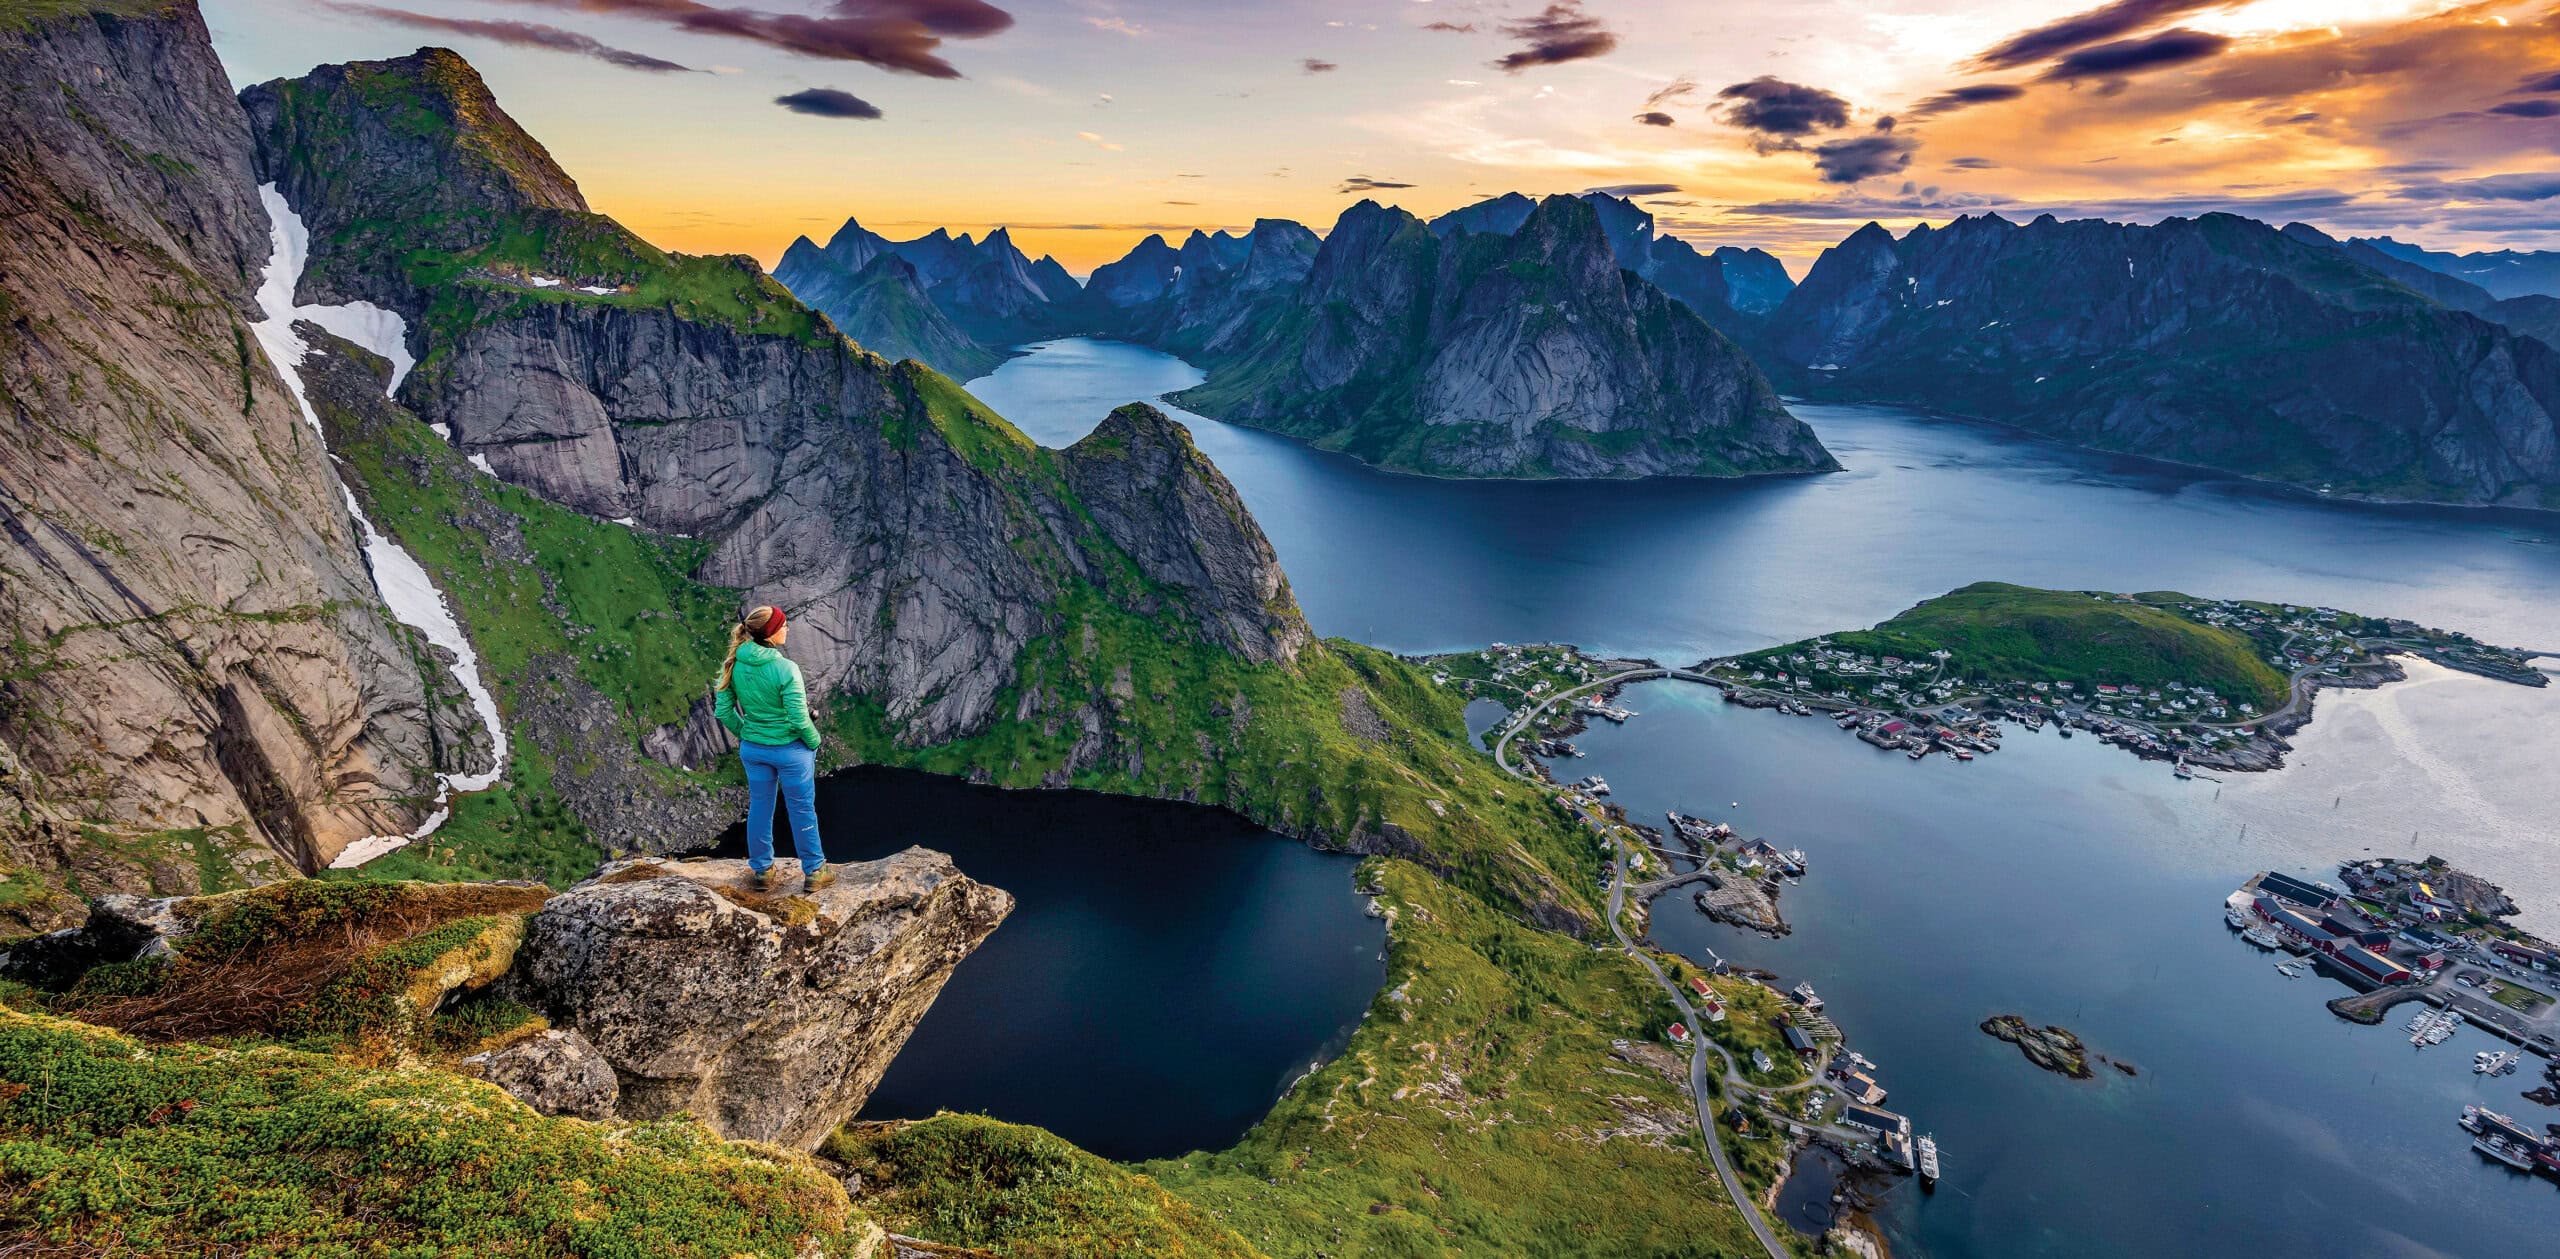 Lofoten Islands Hiking Tour in Norway